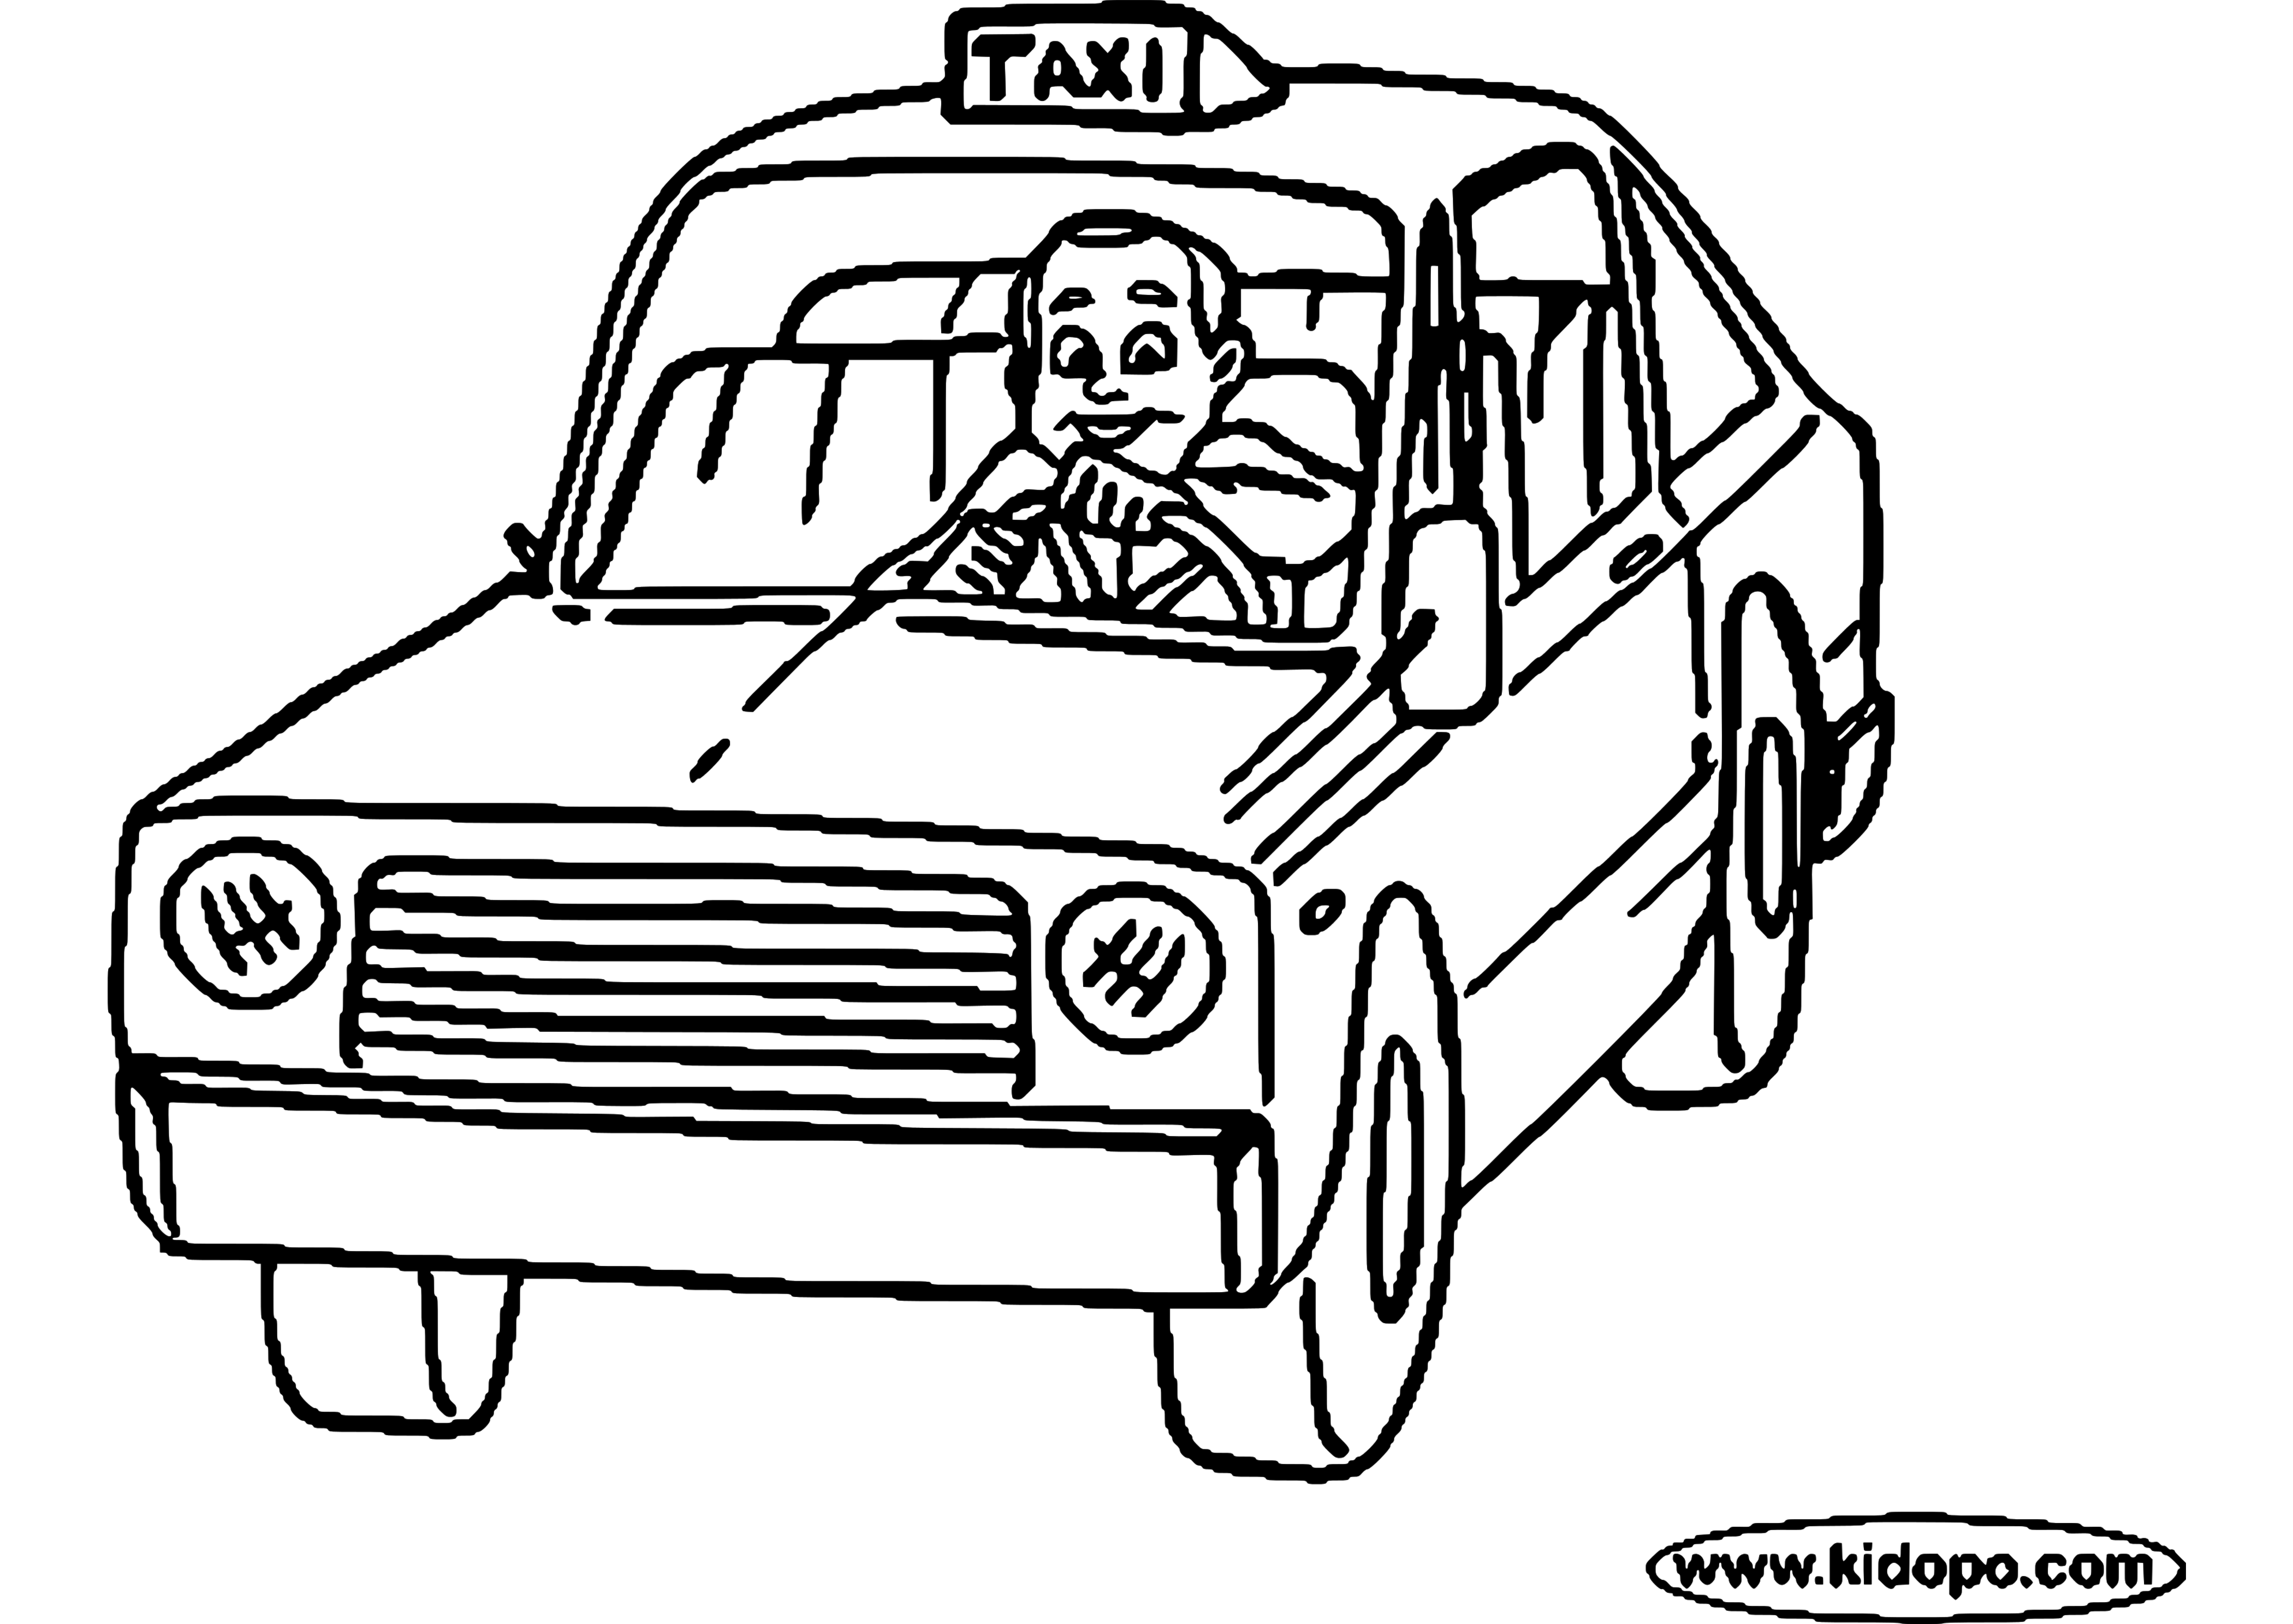 Malvorlage: Taxi (Transport) #137230 - Kostenlose Malvorlagen zum Ausdrucken